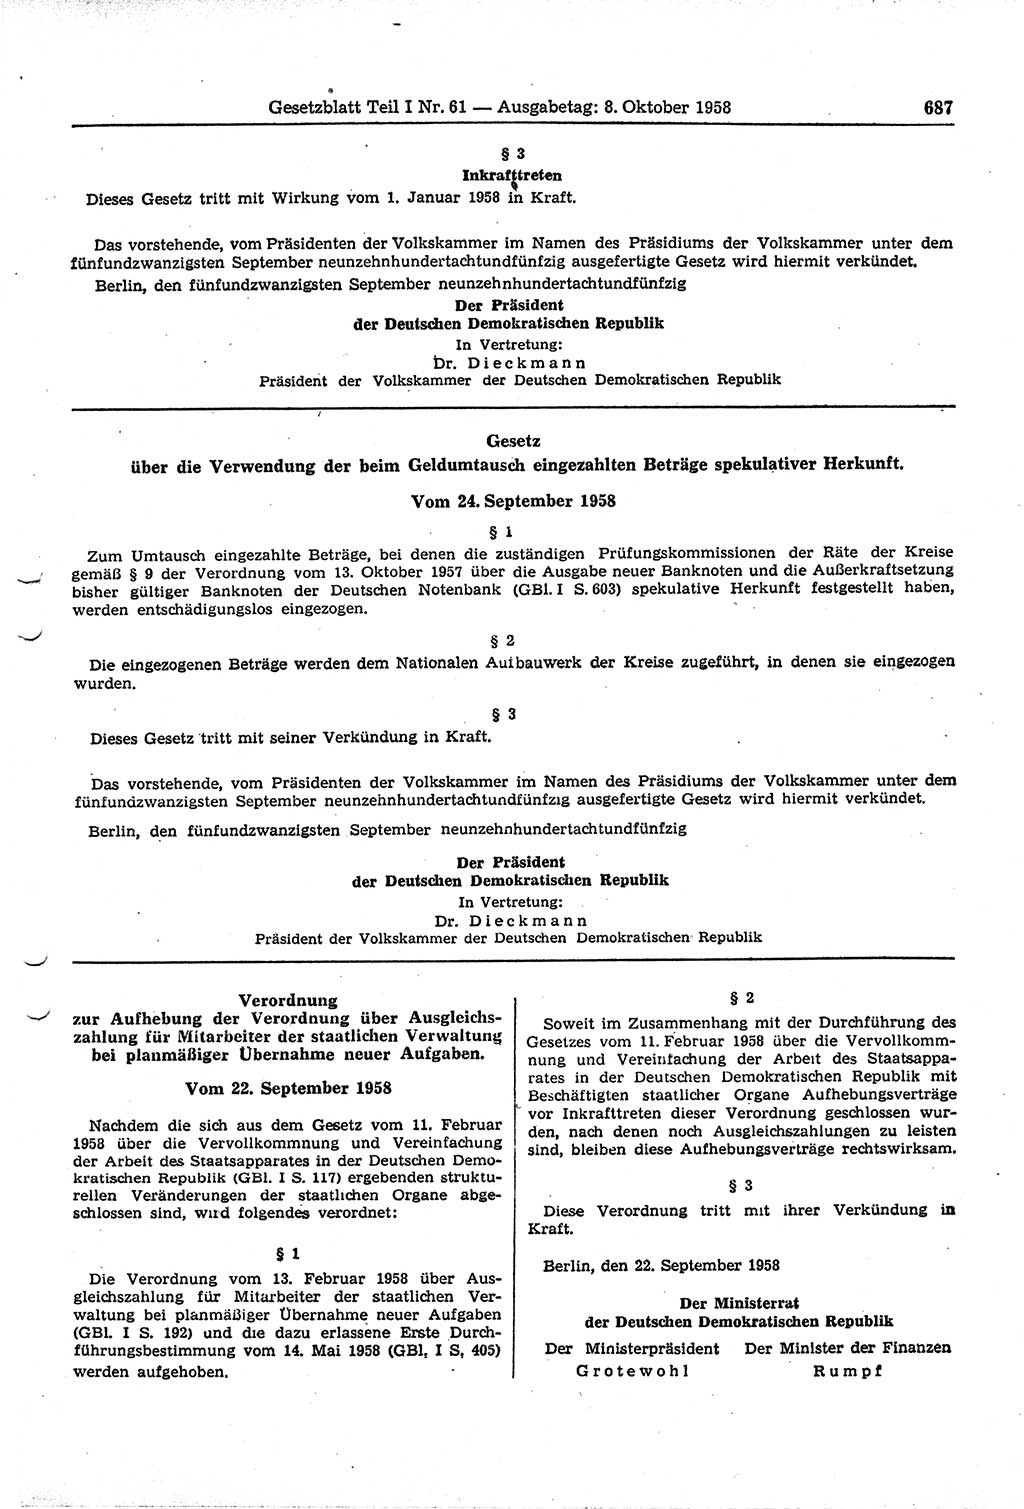 Gesetzblatt (GBl.) der Deutschen Demokratischen Republik (DDR) Teil Ⅰ 1958, Seite 687 (GBl. DDR Ⅰ 1958, S. 687)